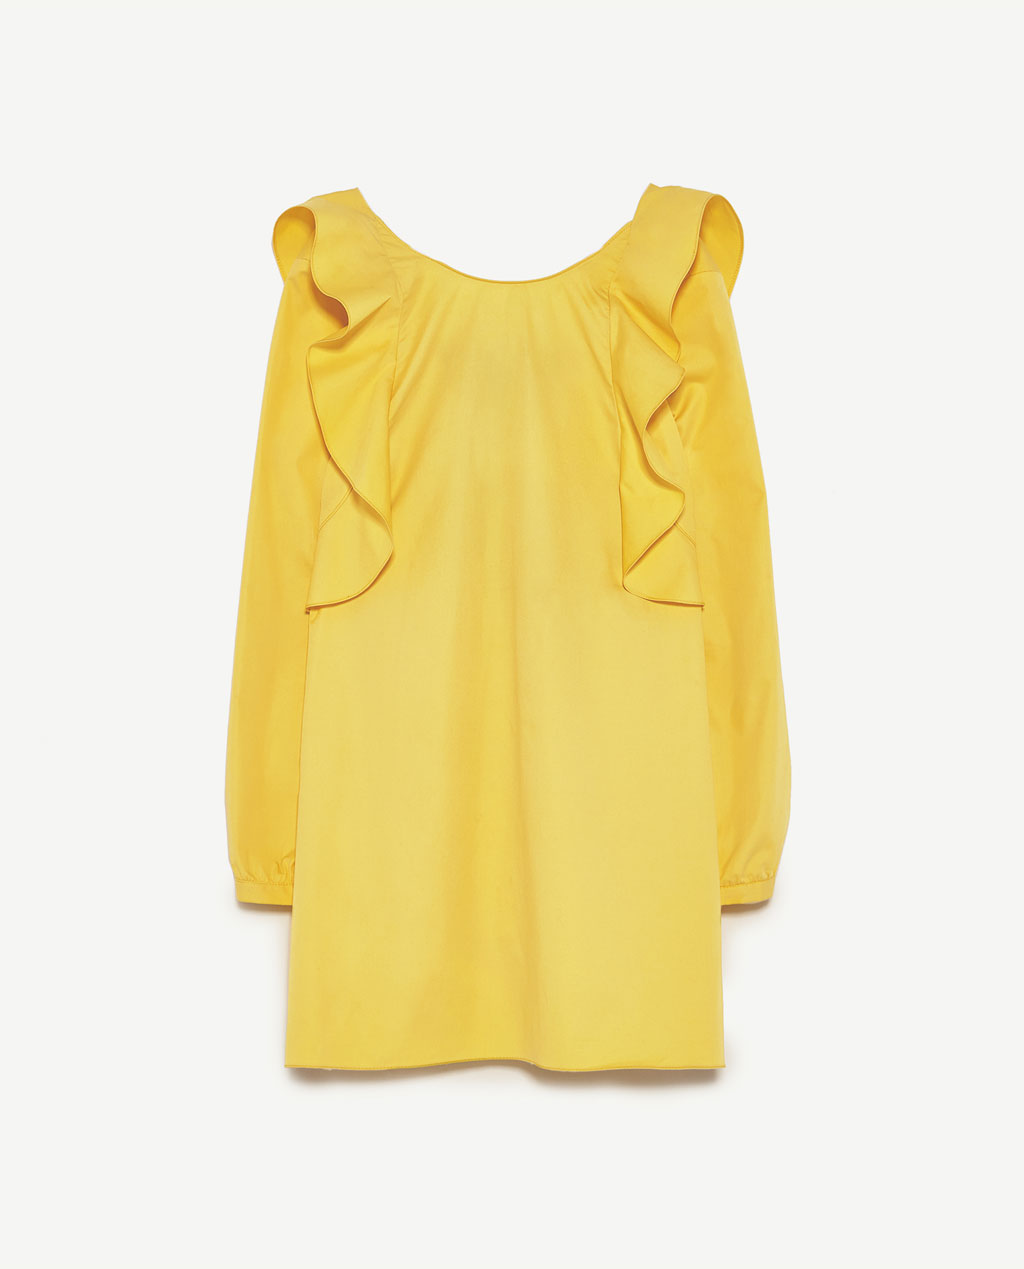 Zara Yellow Frilly Dress